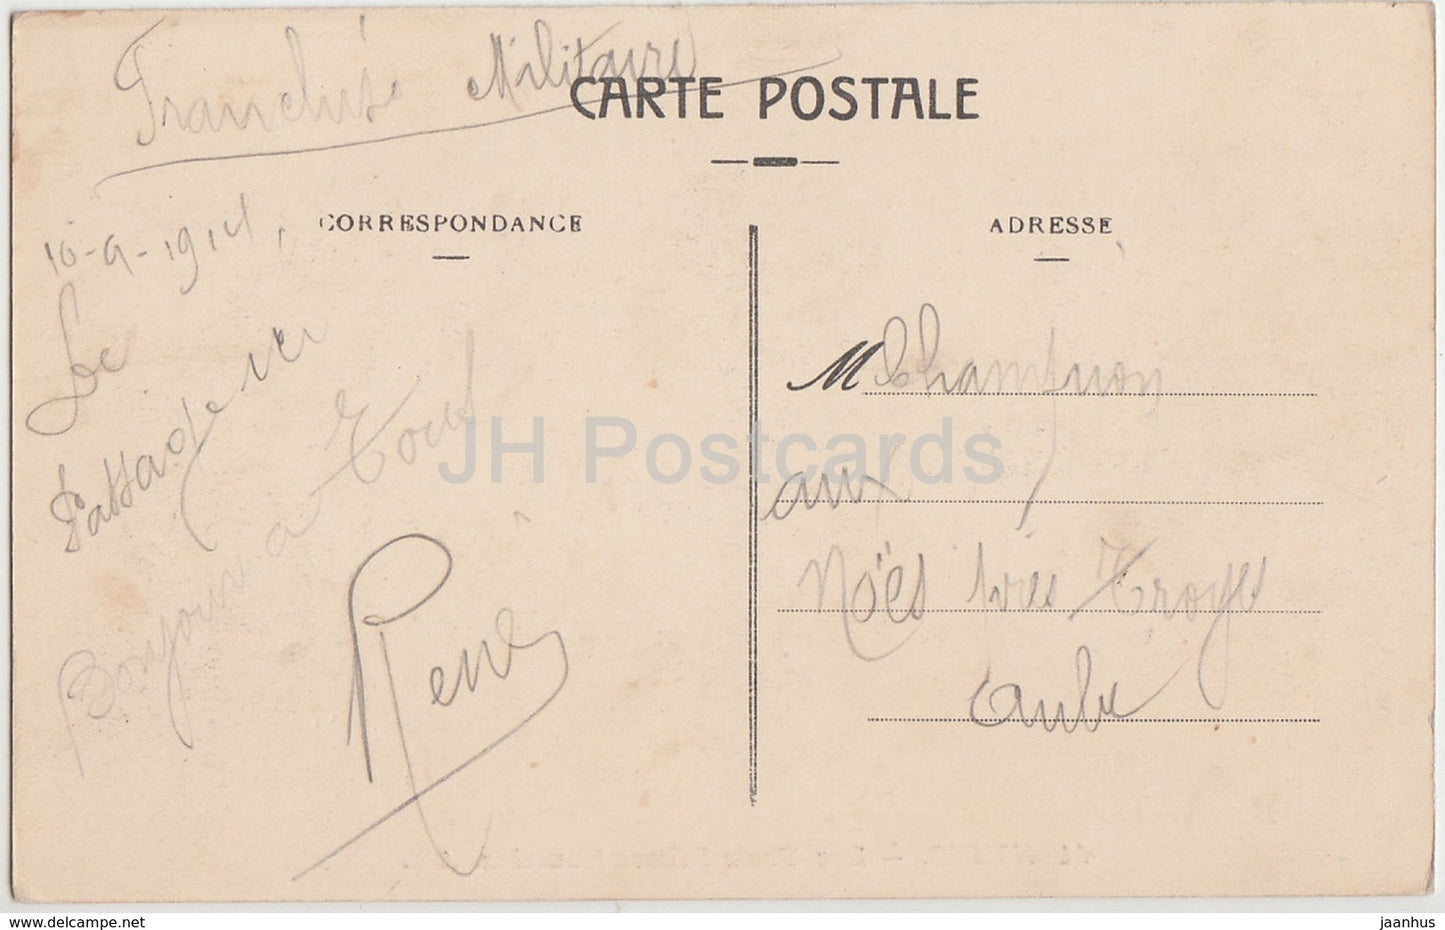 Nimes - Les Trois Piliers Romains - Drei römische Säulen - Antike Welt - 41 - 1914 - alte Postkarte - Frankreich - gebraucht